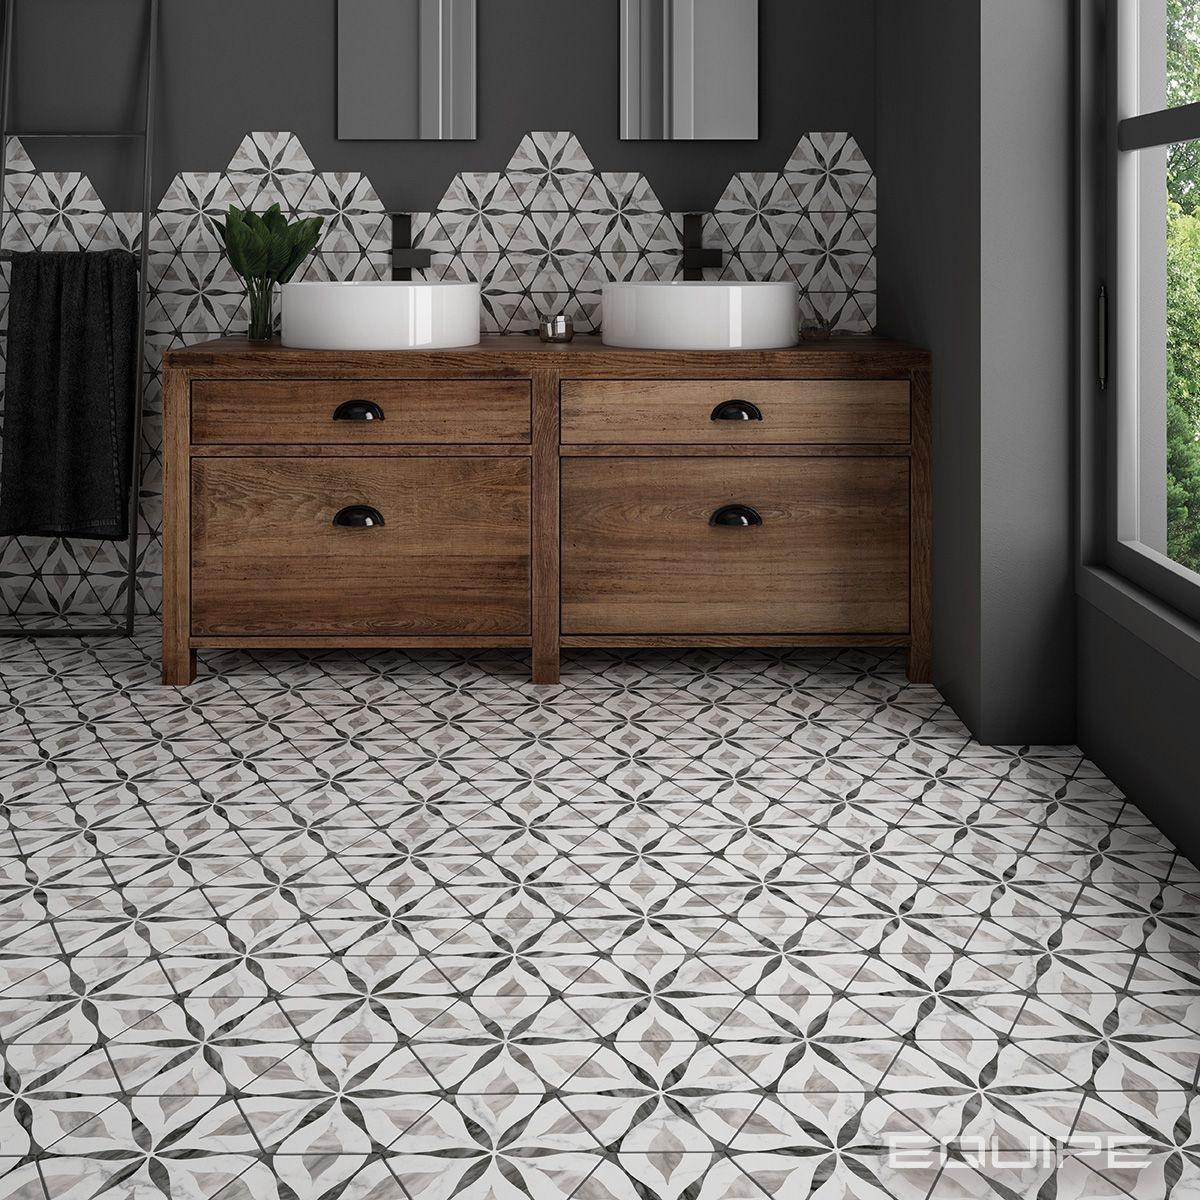 Carreau de ciment gris à motifs géométriques dans une salle de bain épurée avec meuble en bois et détails noirs